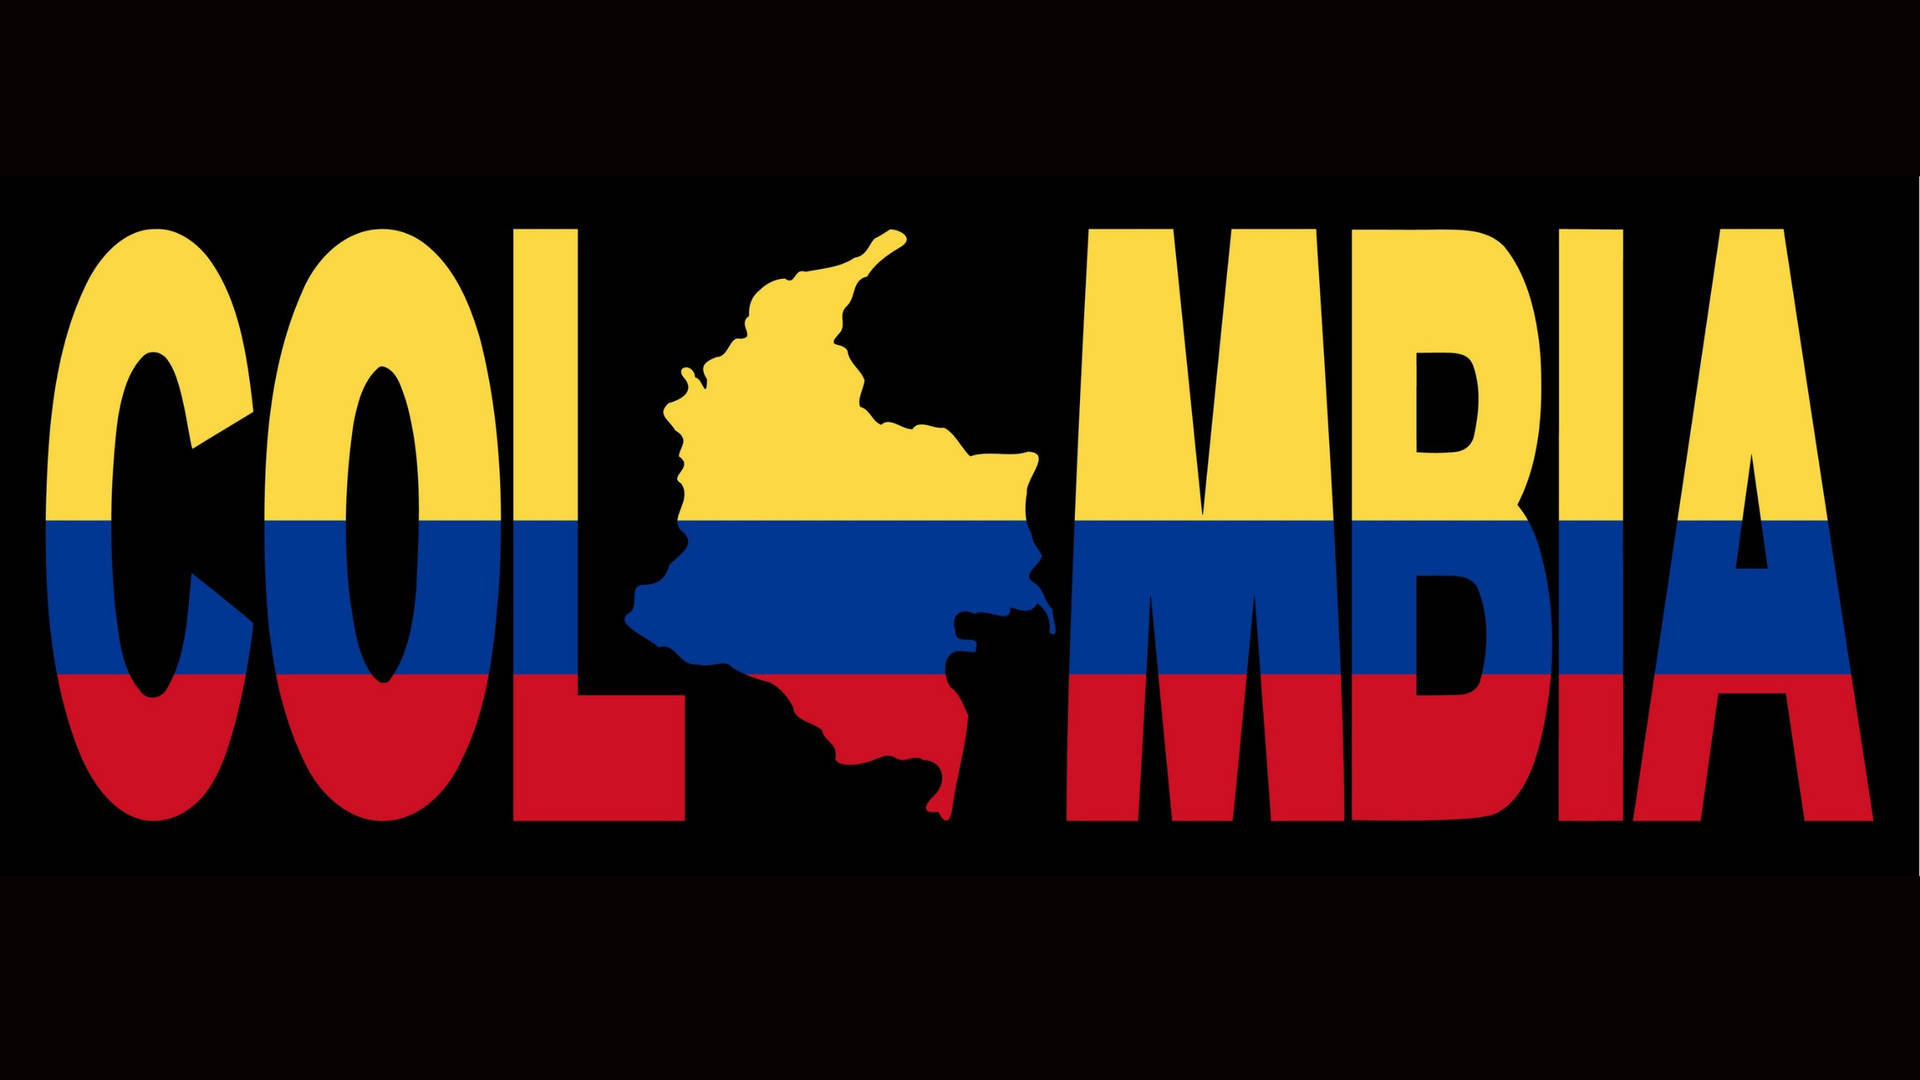 Colombiasflagga Och Karta. Wallpaper